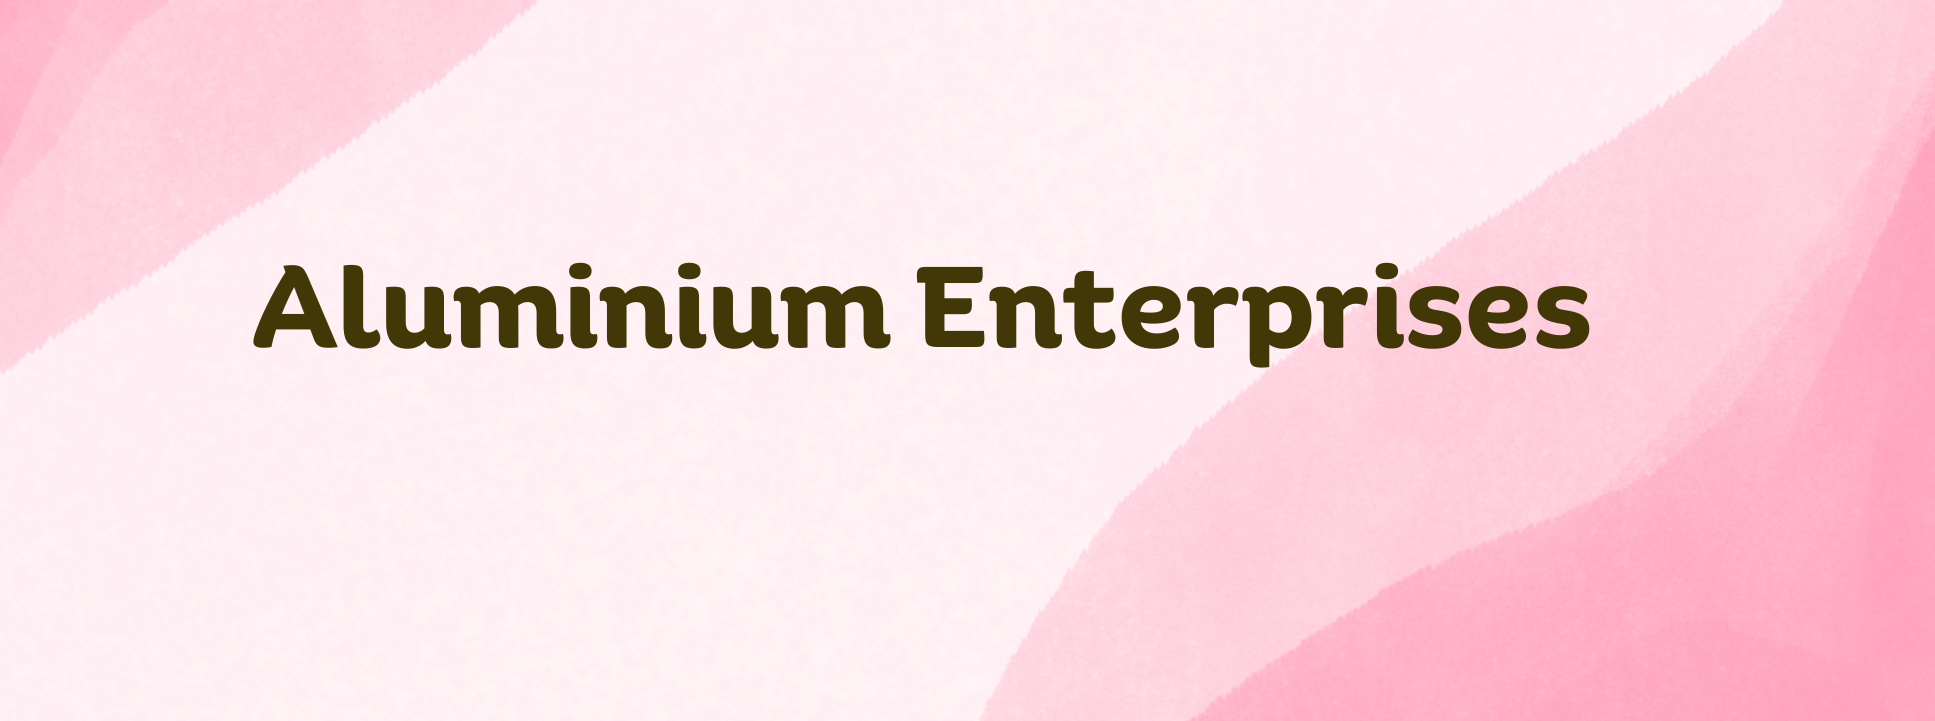  Aluminium Enterprises 